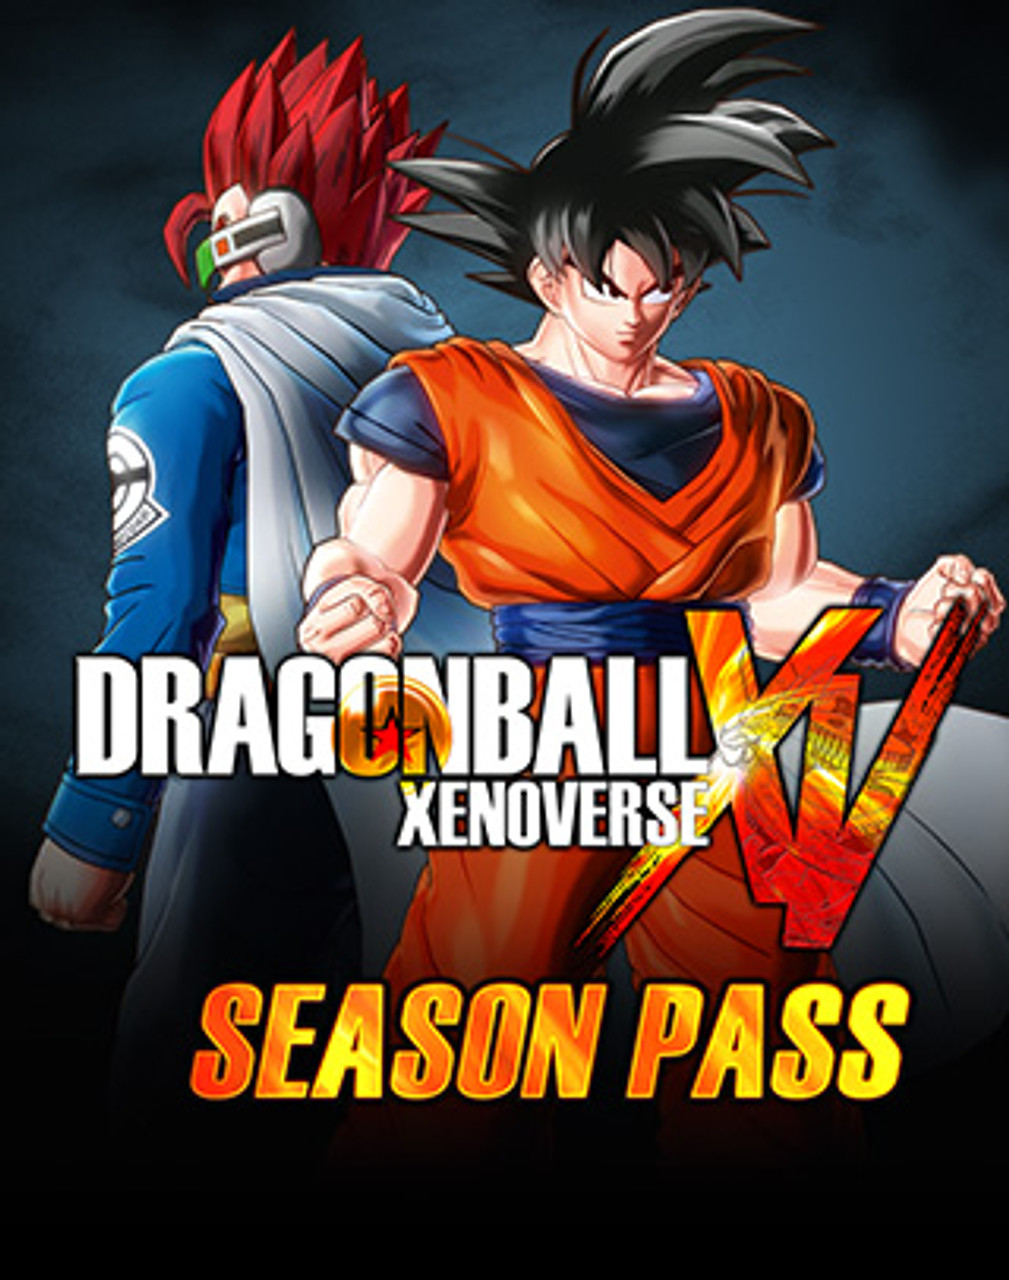 Dragon Ball Z: Kakarot Season Pass - PC